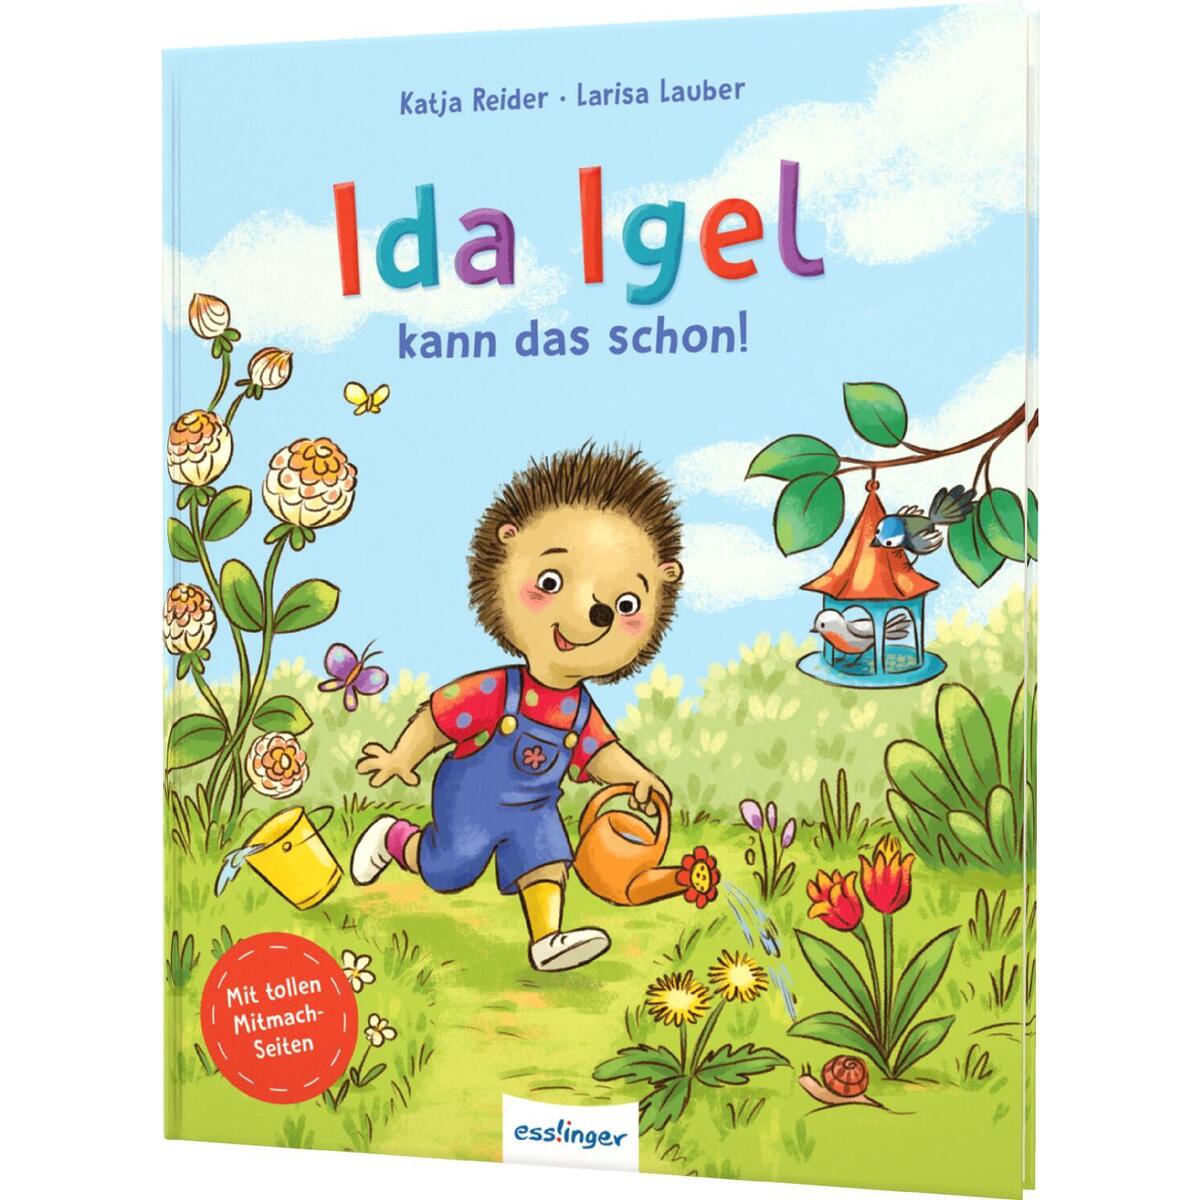 Ida Igel kann das schon! von Esslinger Verlag